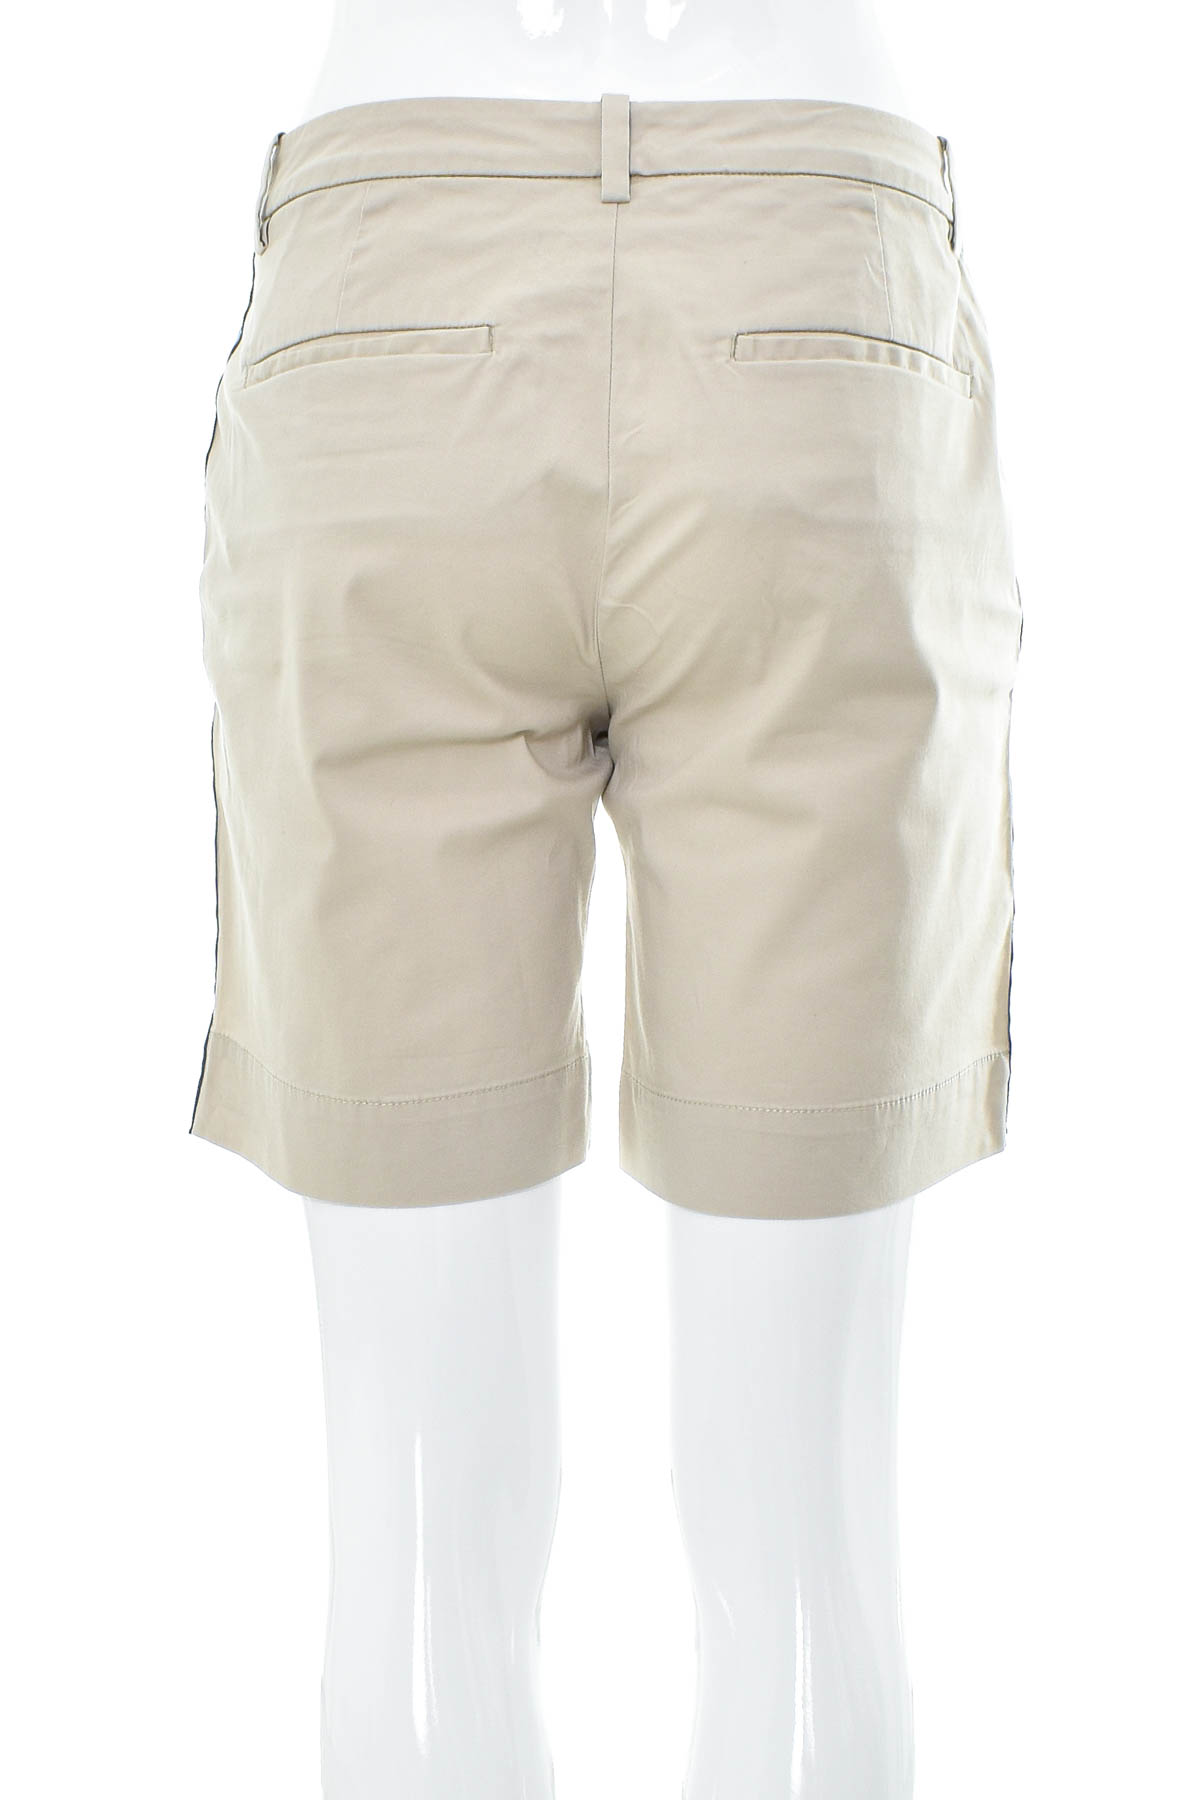 Female shorts - Marc O' Polo - 1